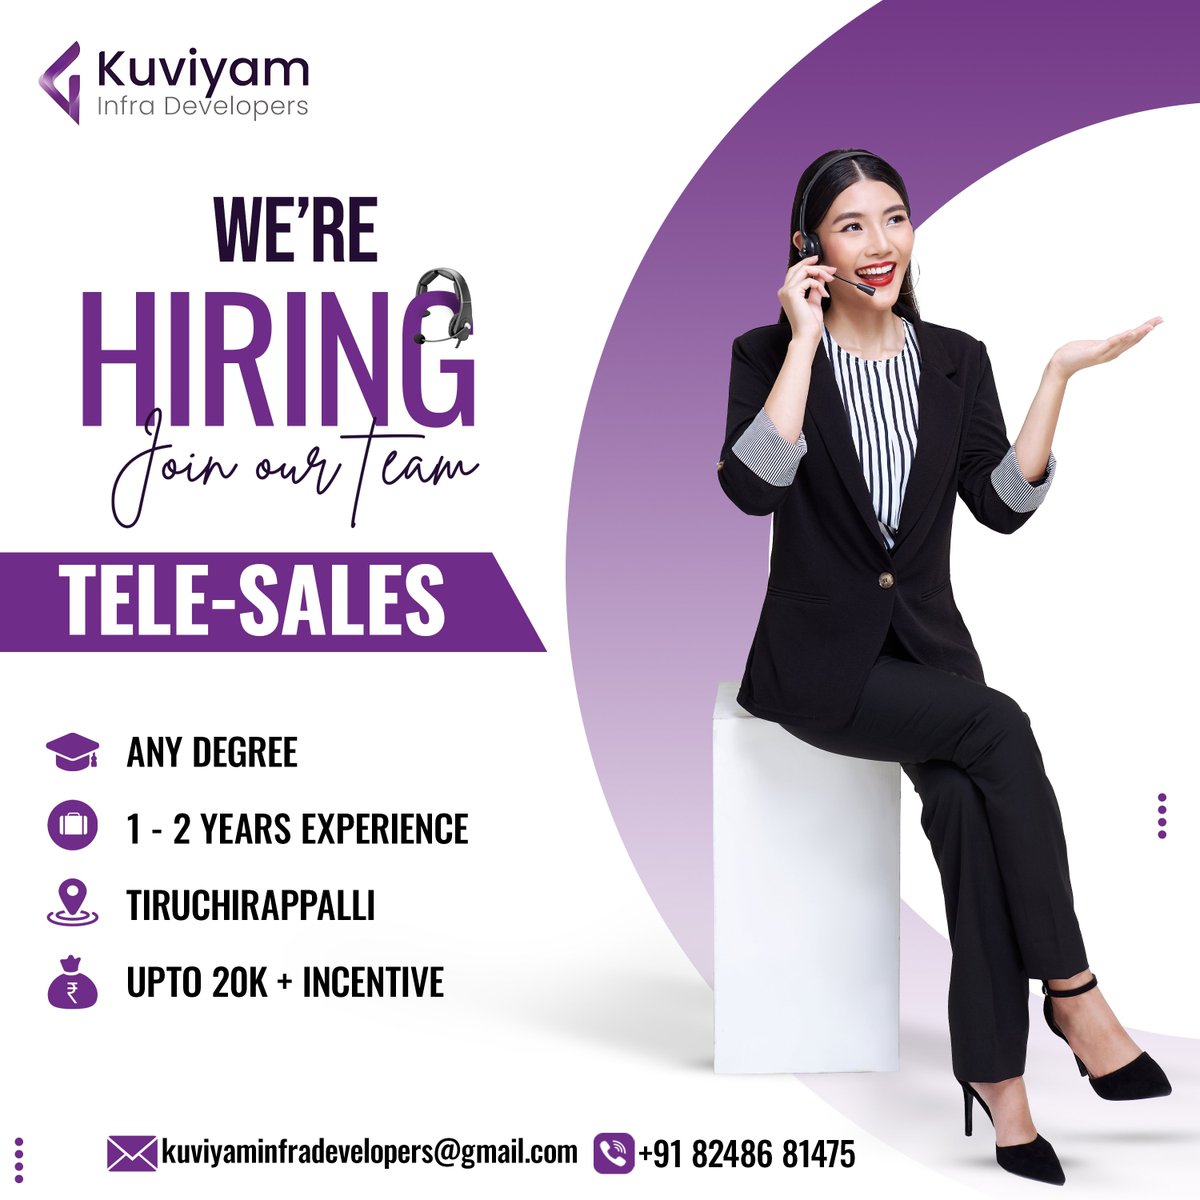 Hiring call!.
.
.
.
.
.
#jobalert #hiringpost #jobhiring #career #jobcall #jobvacancy #trichyjobs #trichy #tiruchirappalli #kuviyaminfradevelopers #hiring